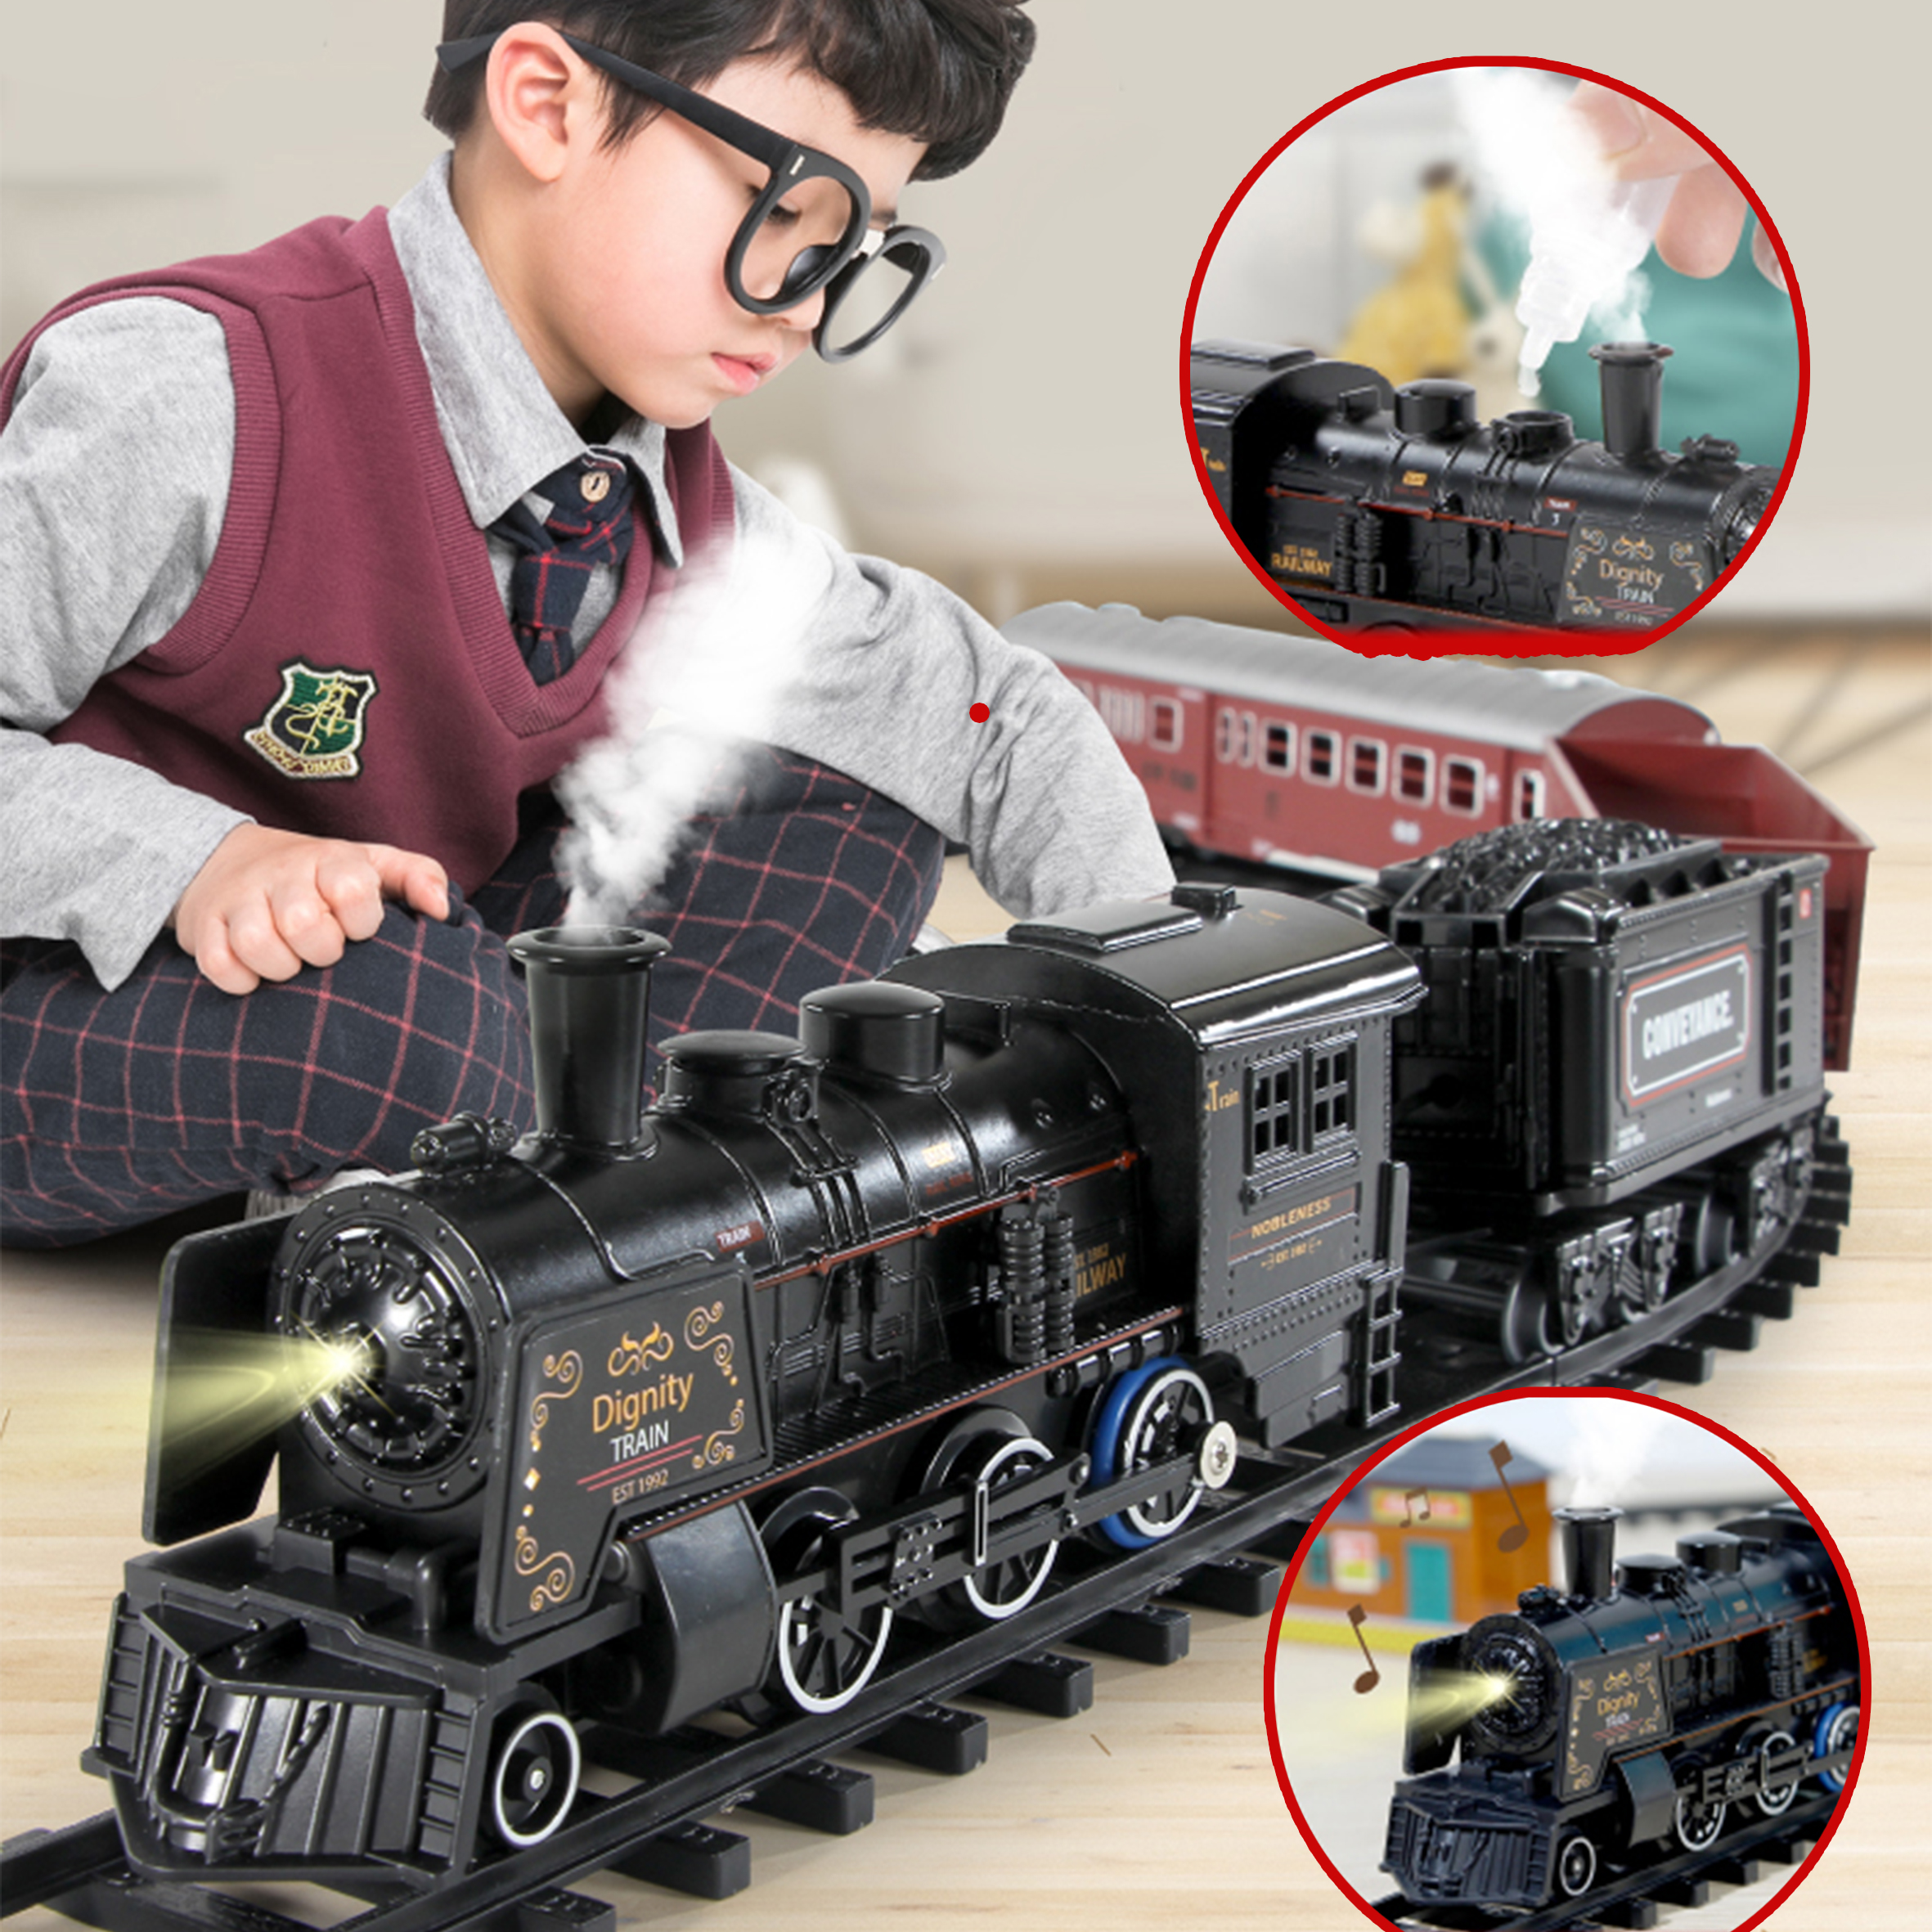 【CLD】รถไฟไอน้ำ/ รถไฟรางชุดใหญ่ / รถไฟฟ้าเด็ก /รถไฟบังคับ /ของเล่นเด็ก /รถไฟไอน้ำคลาสสิก  รถไฟราง  รถไฟของเล่น W0078